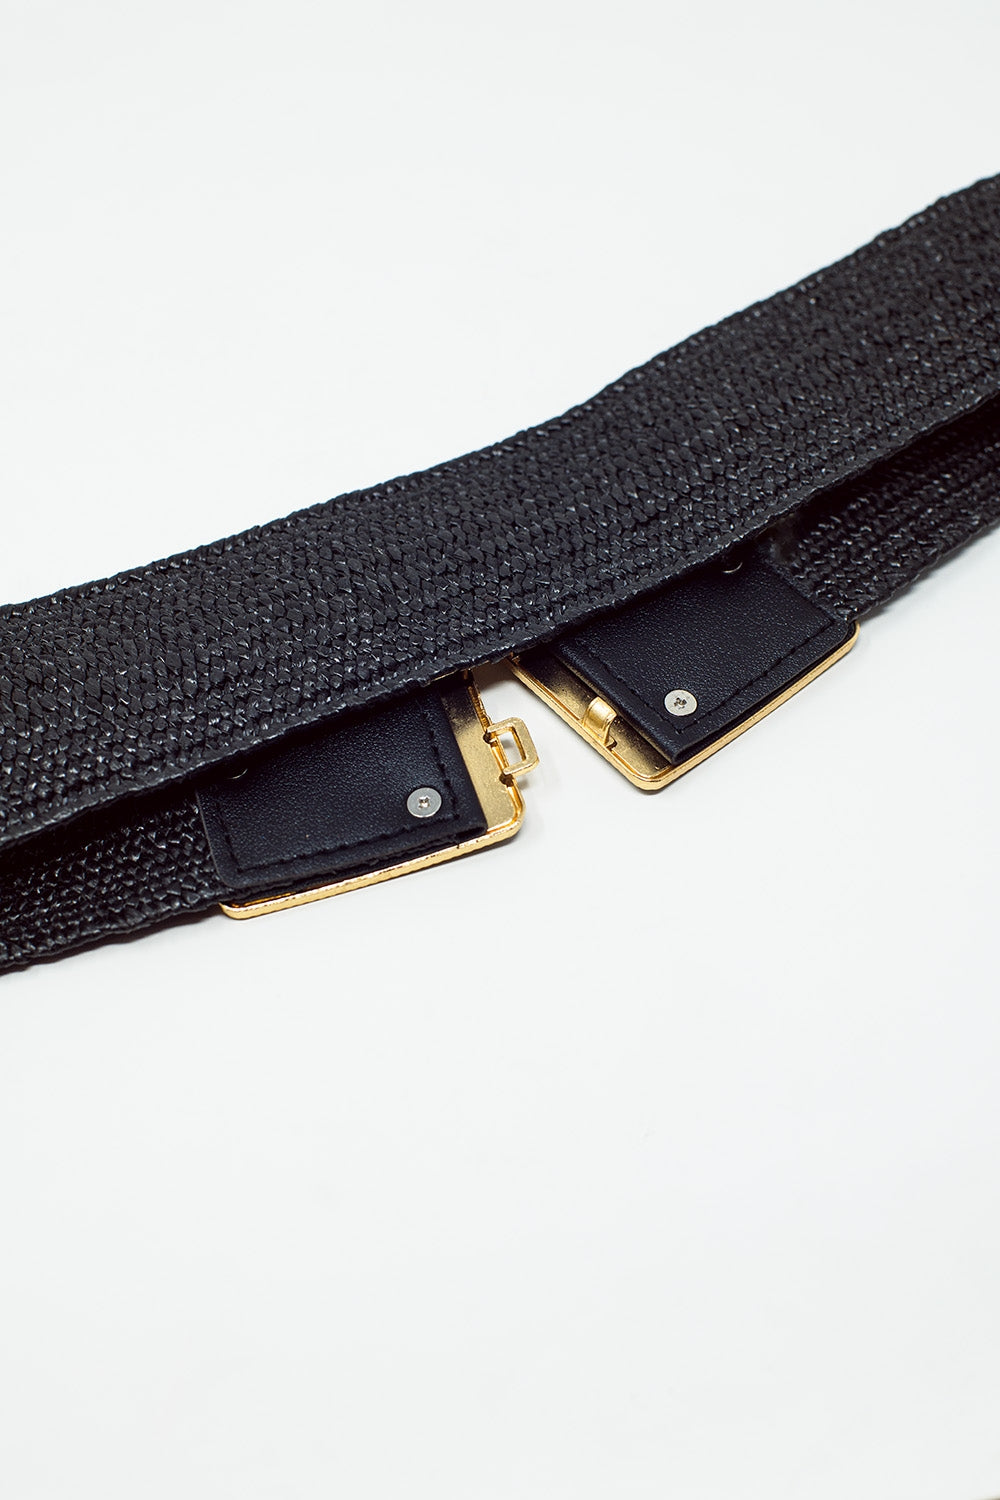 Cintura nera intrecciata con fibbia quadrata con dettagli bianchi e oro